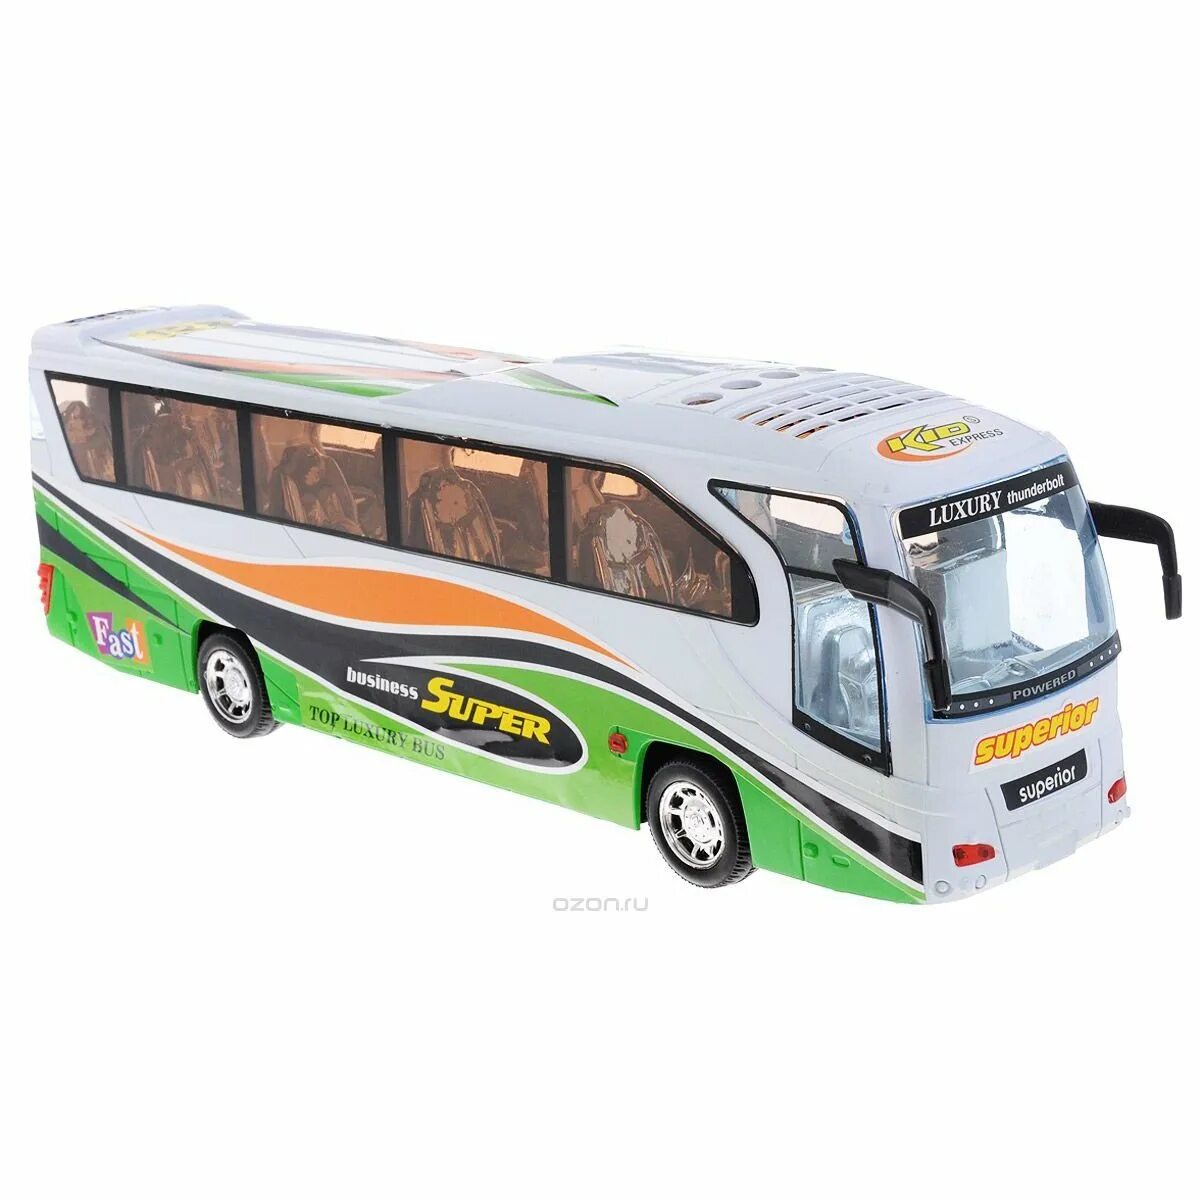 Bus toys. Игрушка автобус. Автобус игрушечный. Автобус машина игрушка. Игрушка автобус для детей.